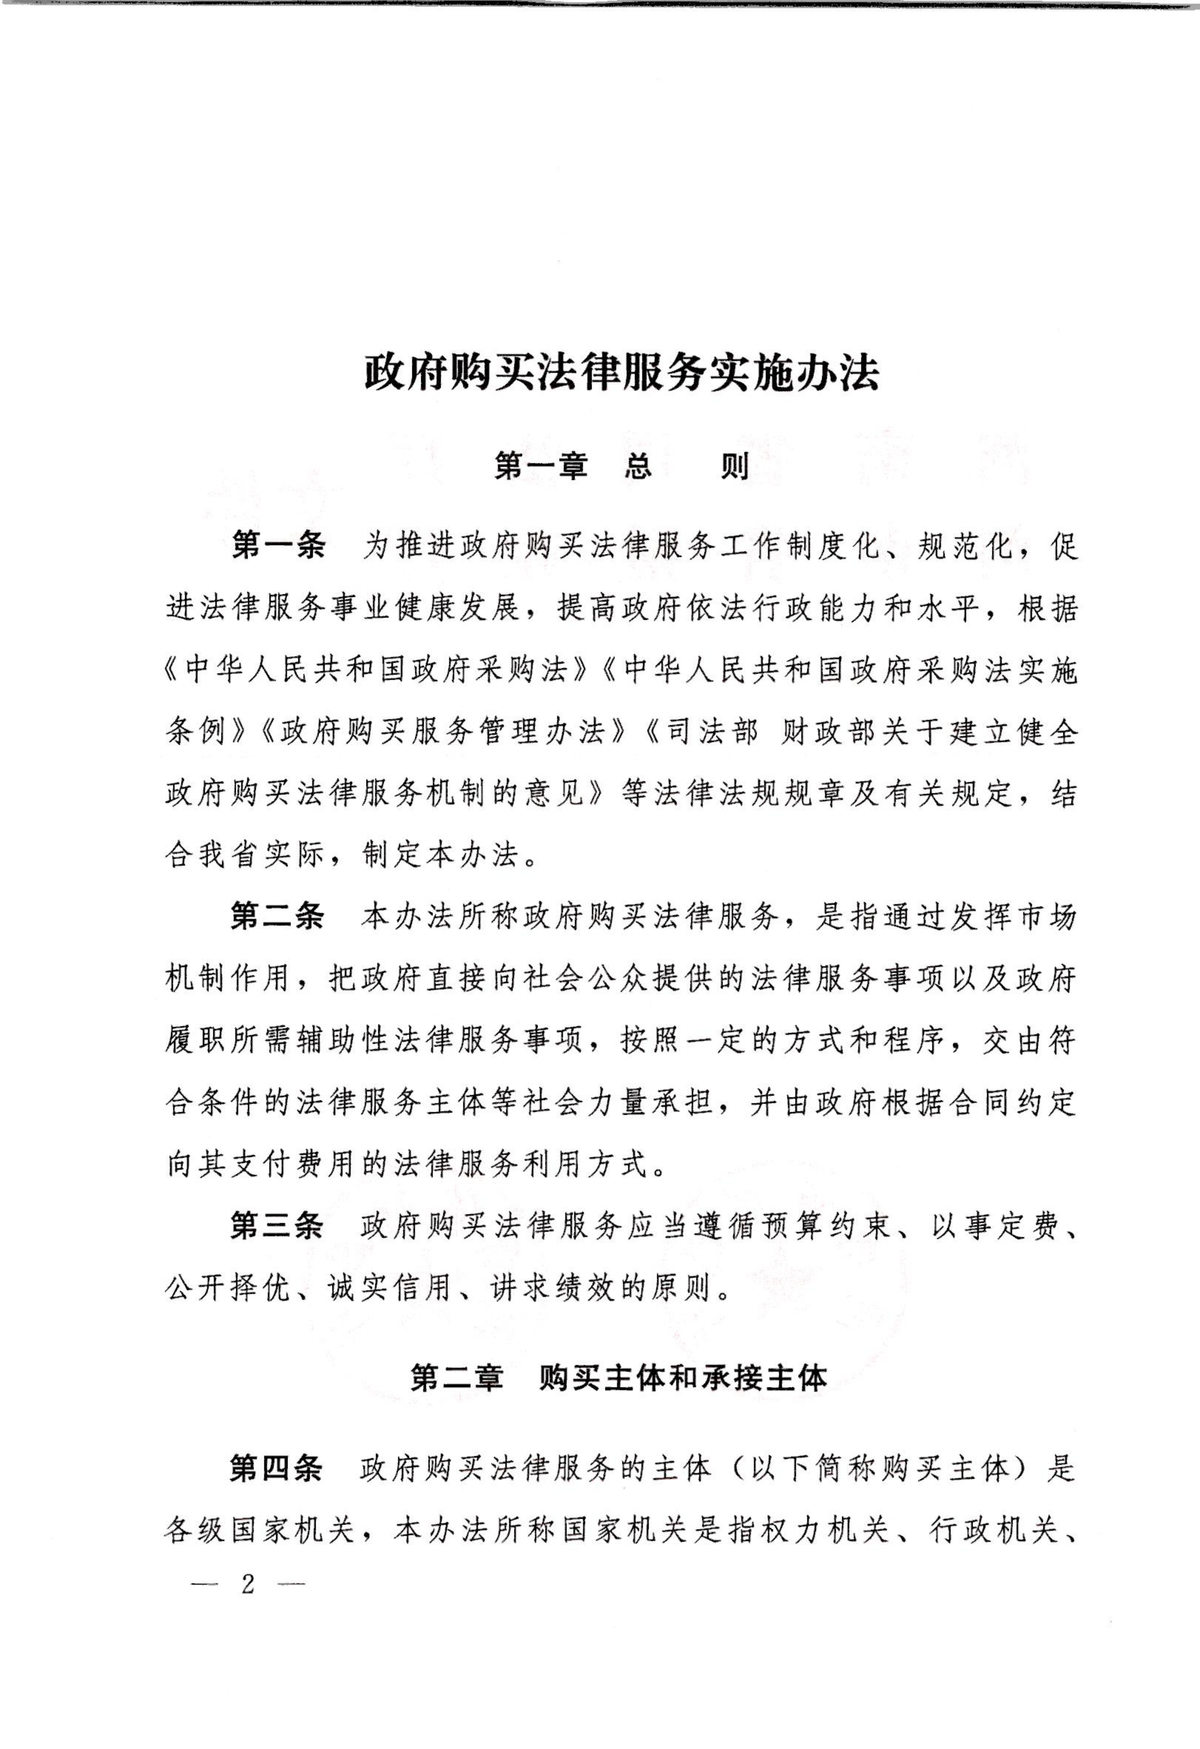 河南省司法厅 河南省财政厅关于印发《政府购买法律服务实施办法》的通知